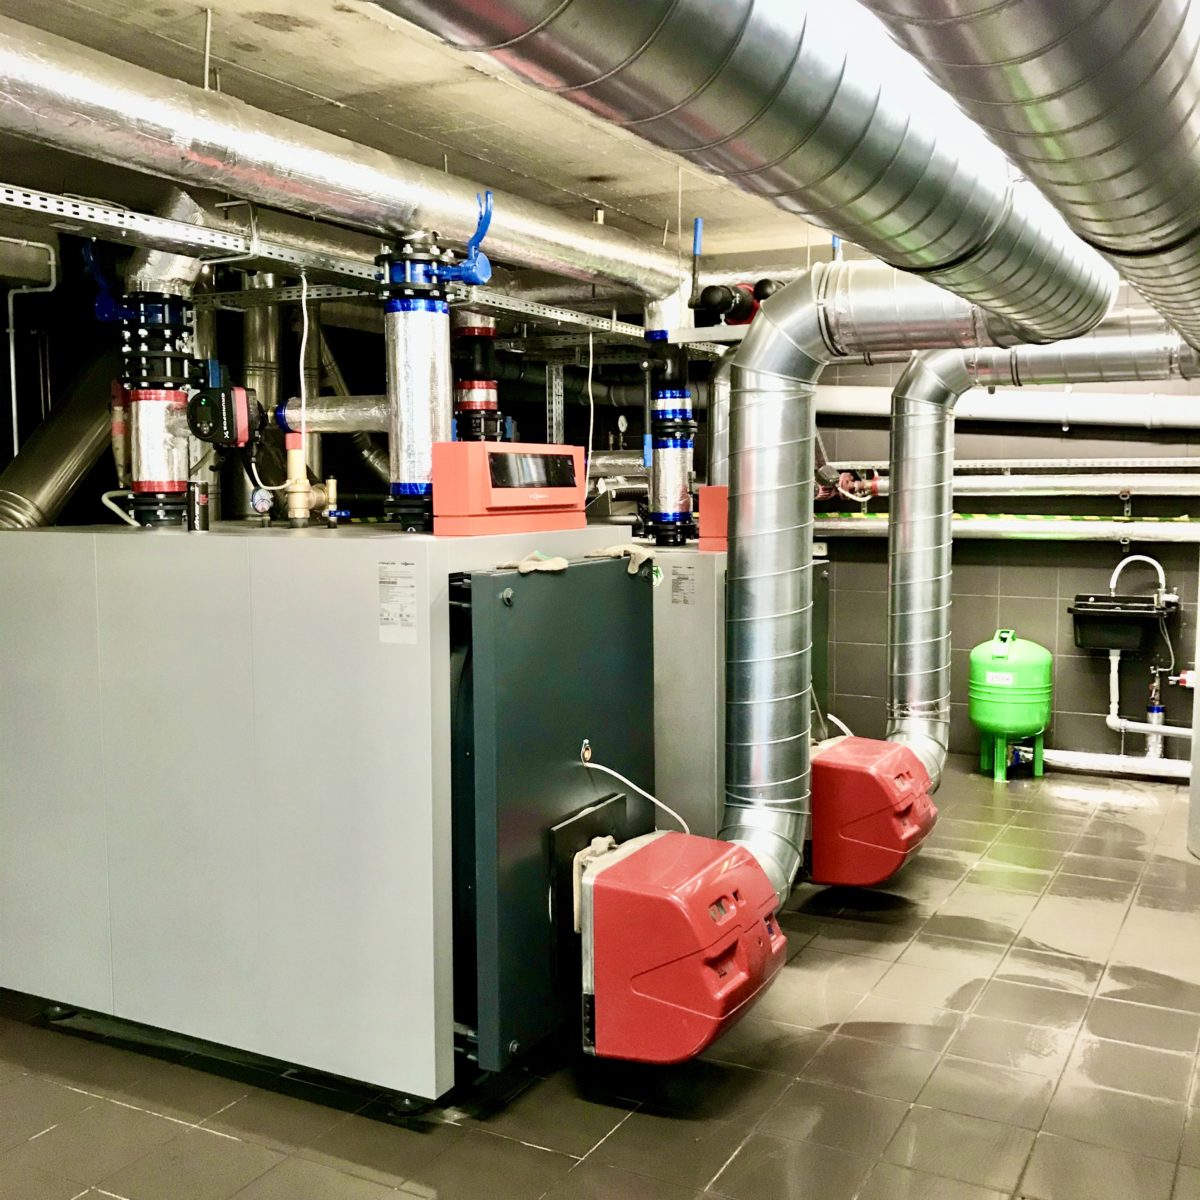 Realizacja – Wykonanie instalacji klimatyzacji oraz modernizacja kotłowni w budynku biurowym ETOS.